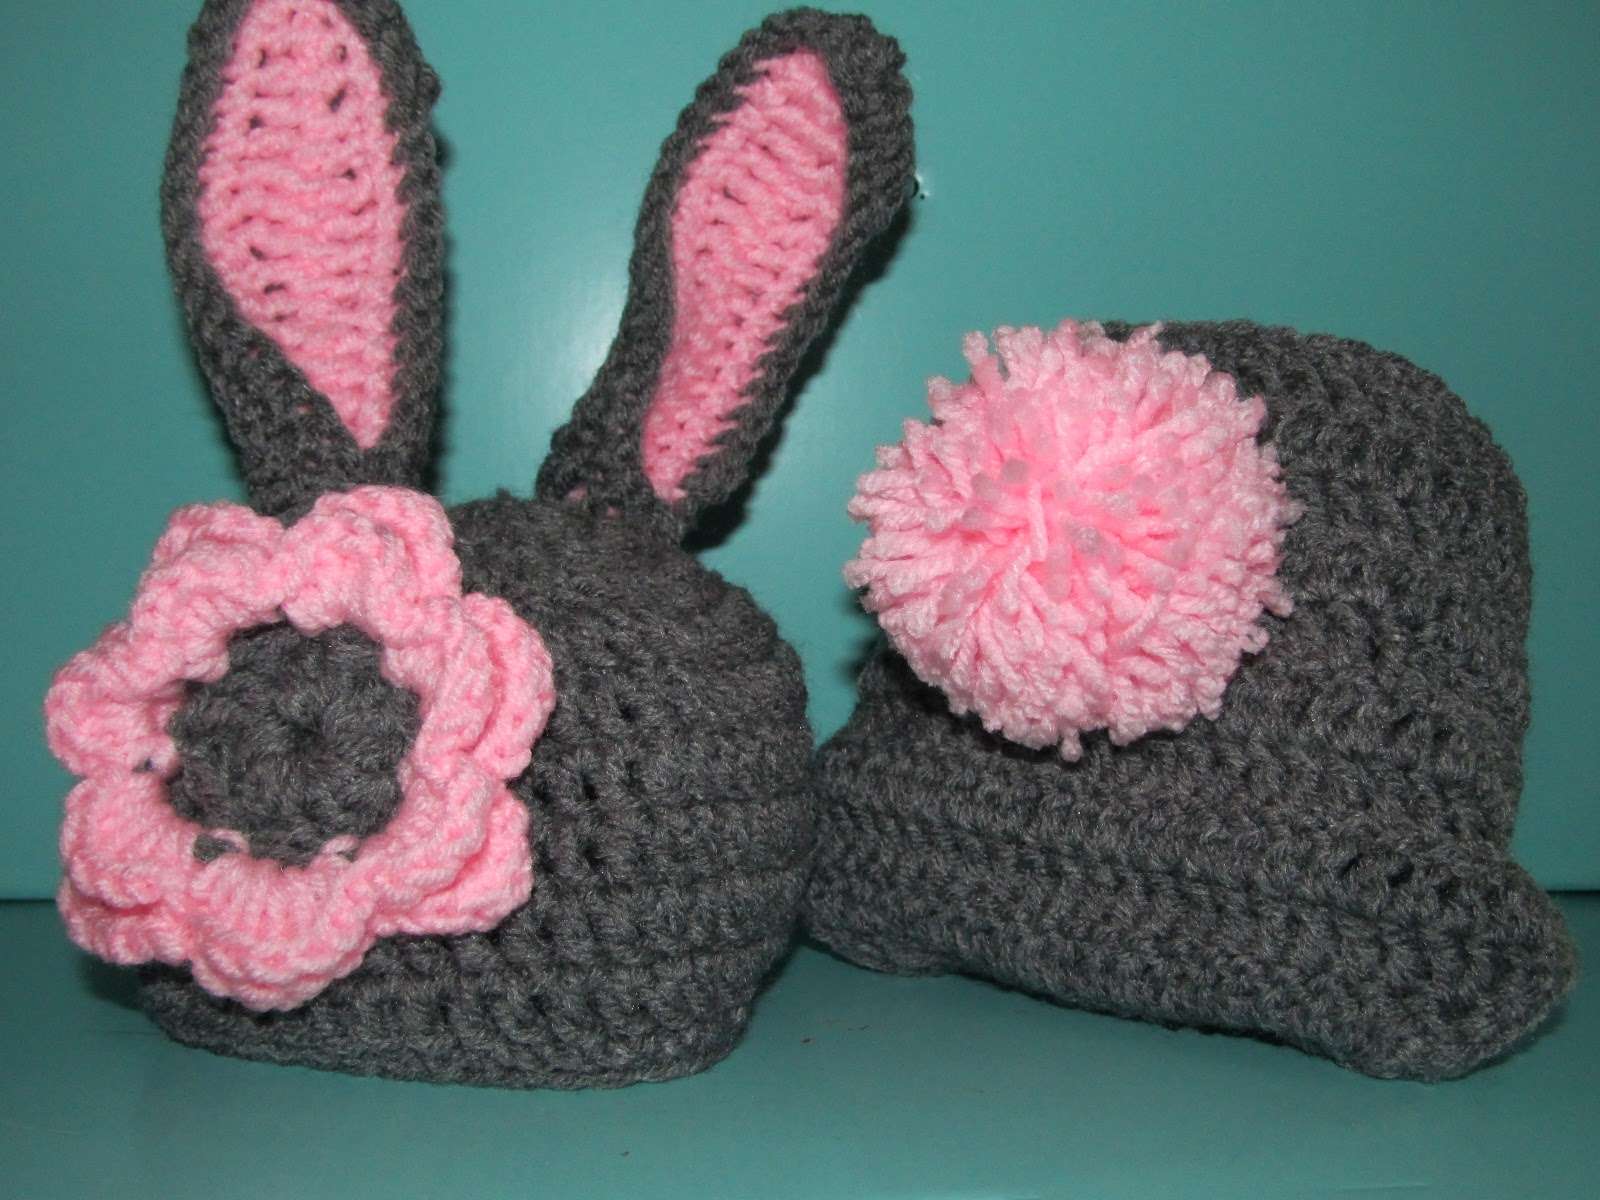 How To Crochet Bunny Hat